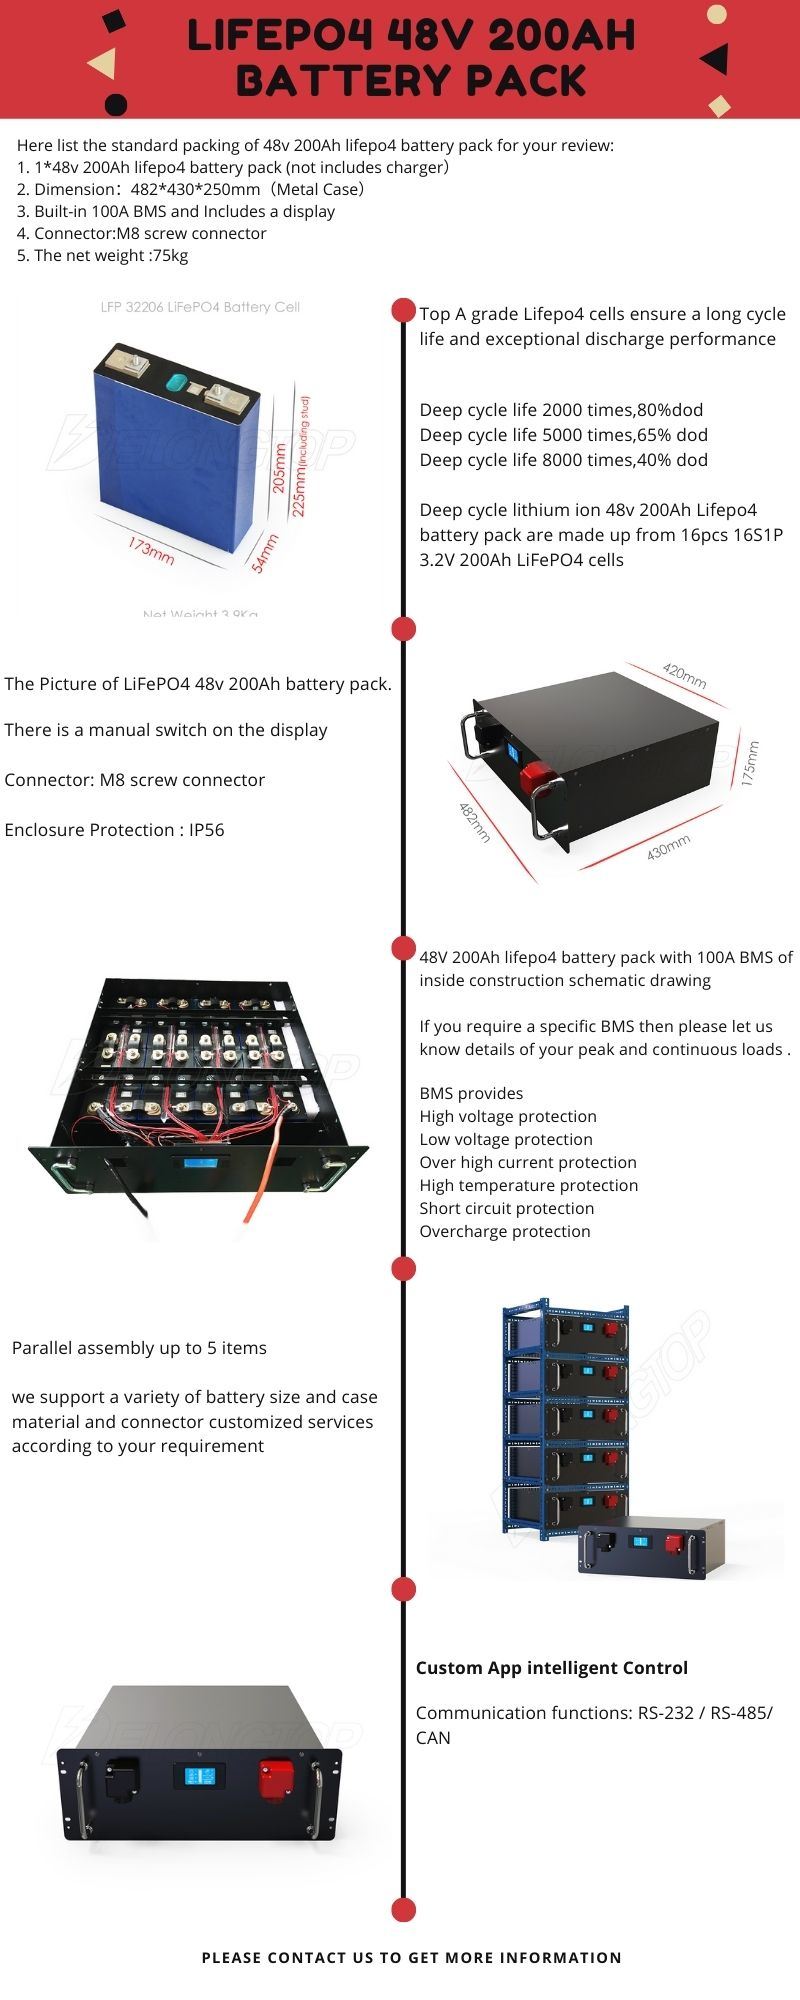 Batteries au lithium de cycle profond 48V 200ah pour stockage de puissance solaire